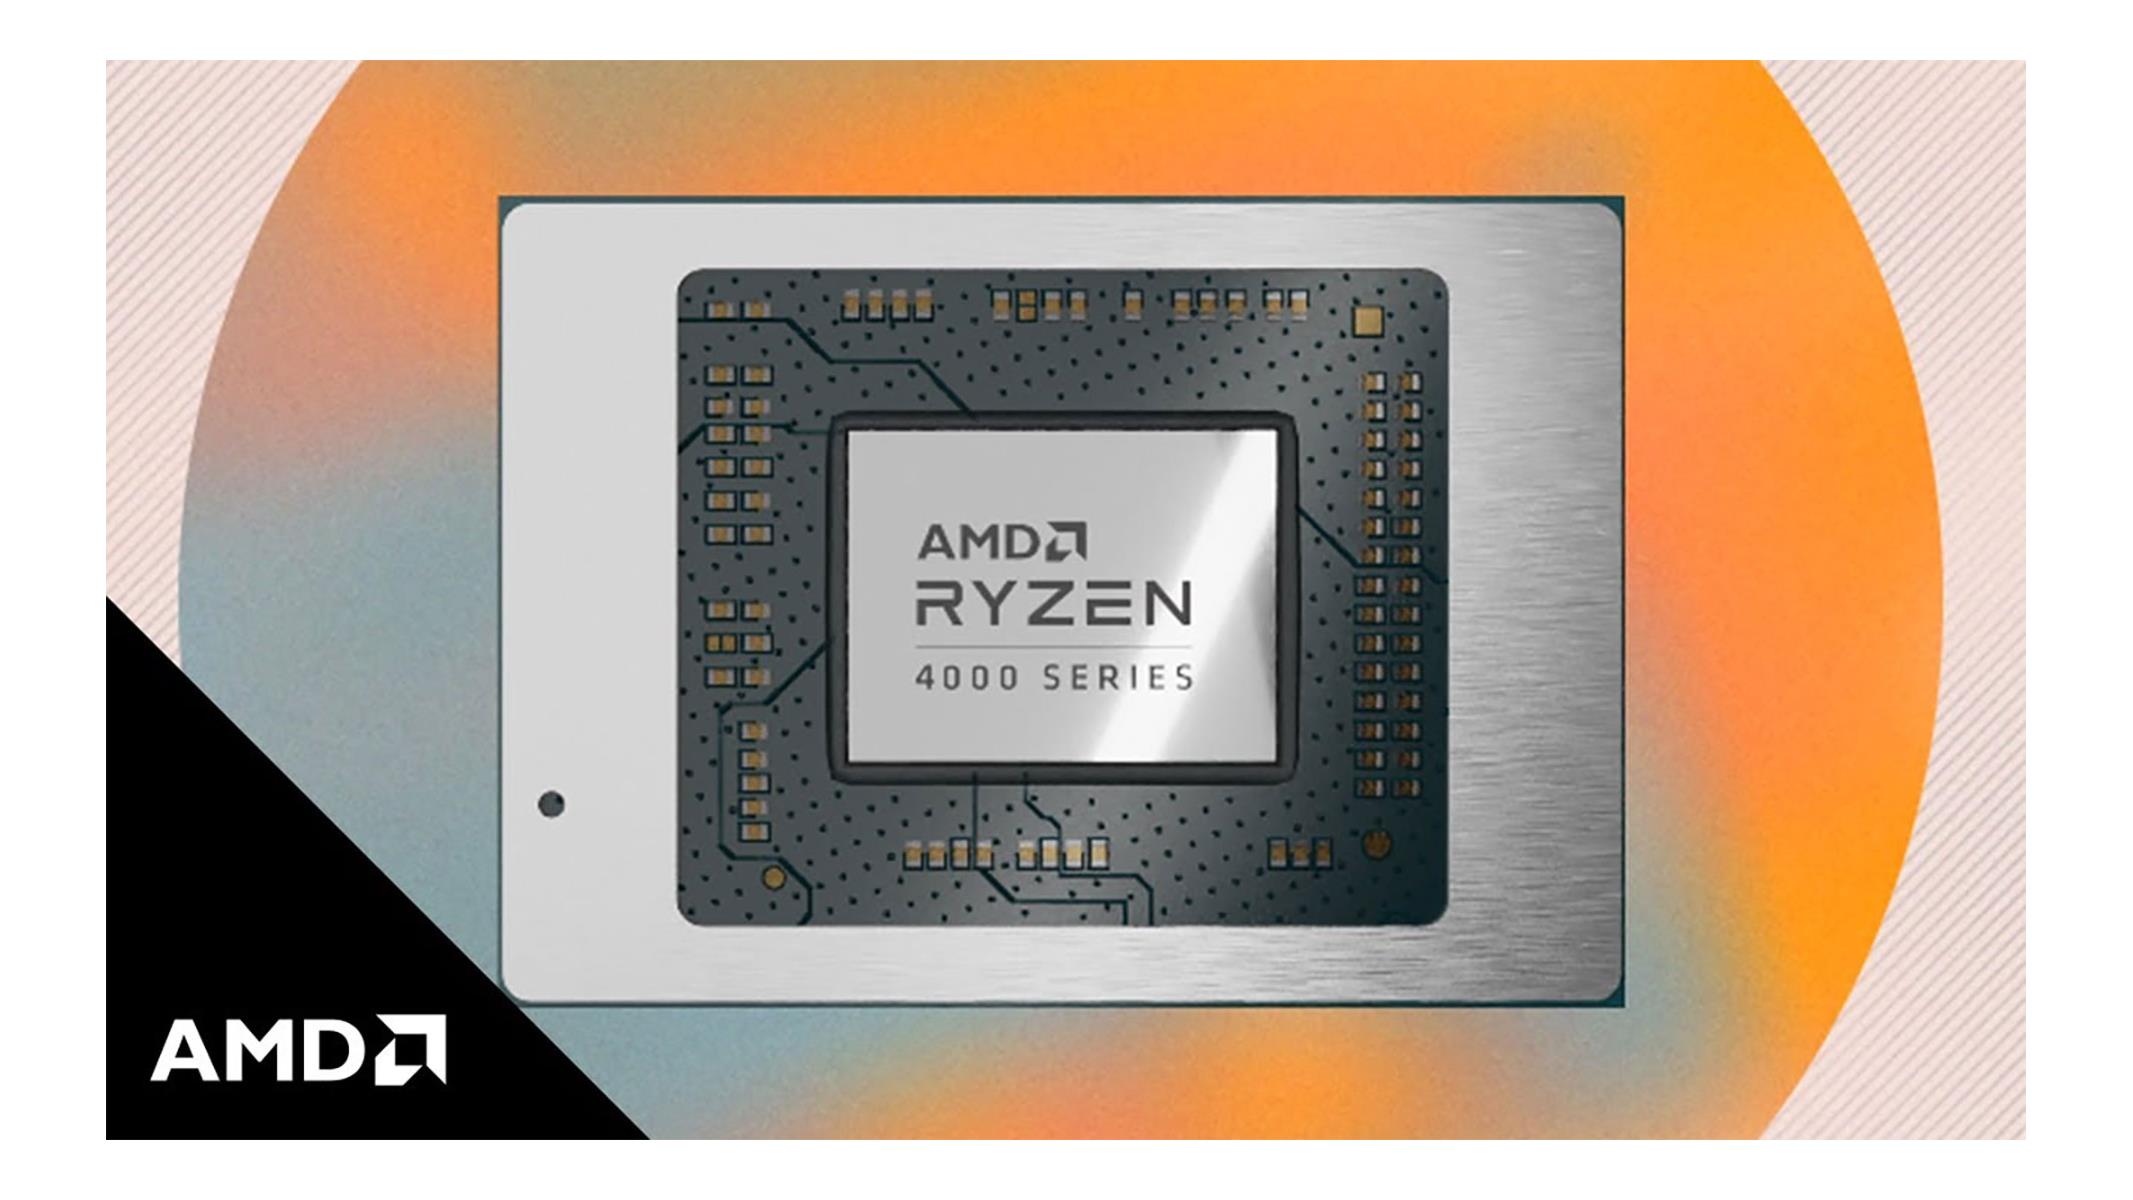 AMD Ryzen 4000 Zen 2 Desktop CPU With Integrated Radeon GPU And 